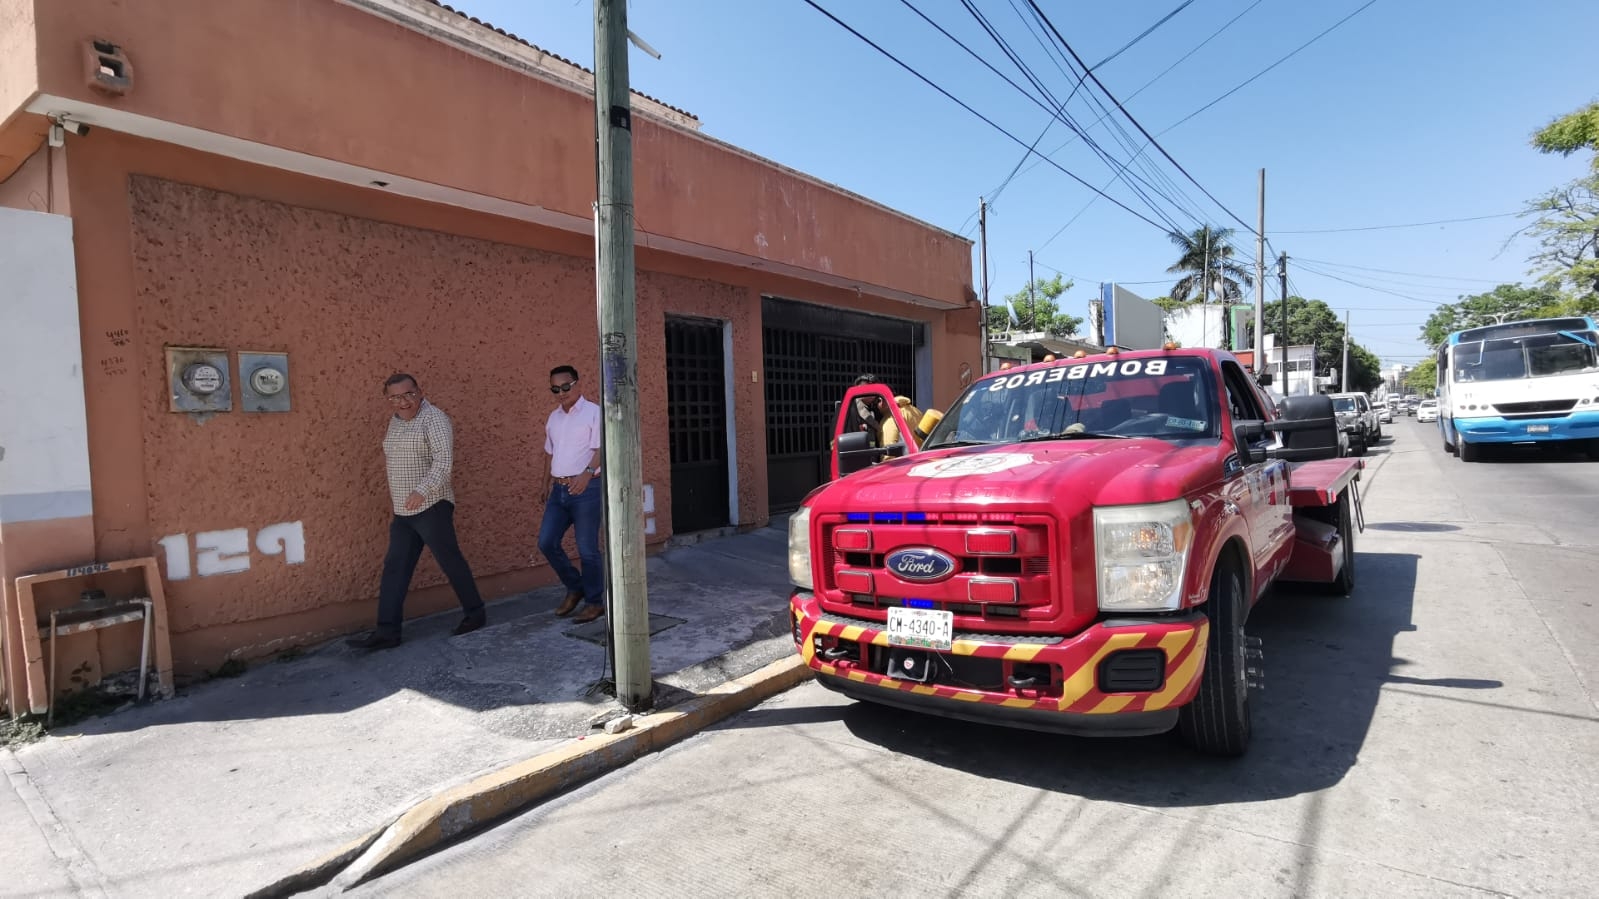 Flamazo en una estufa provoca quemaduras a un hombre en Ciudad del Carmen